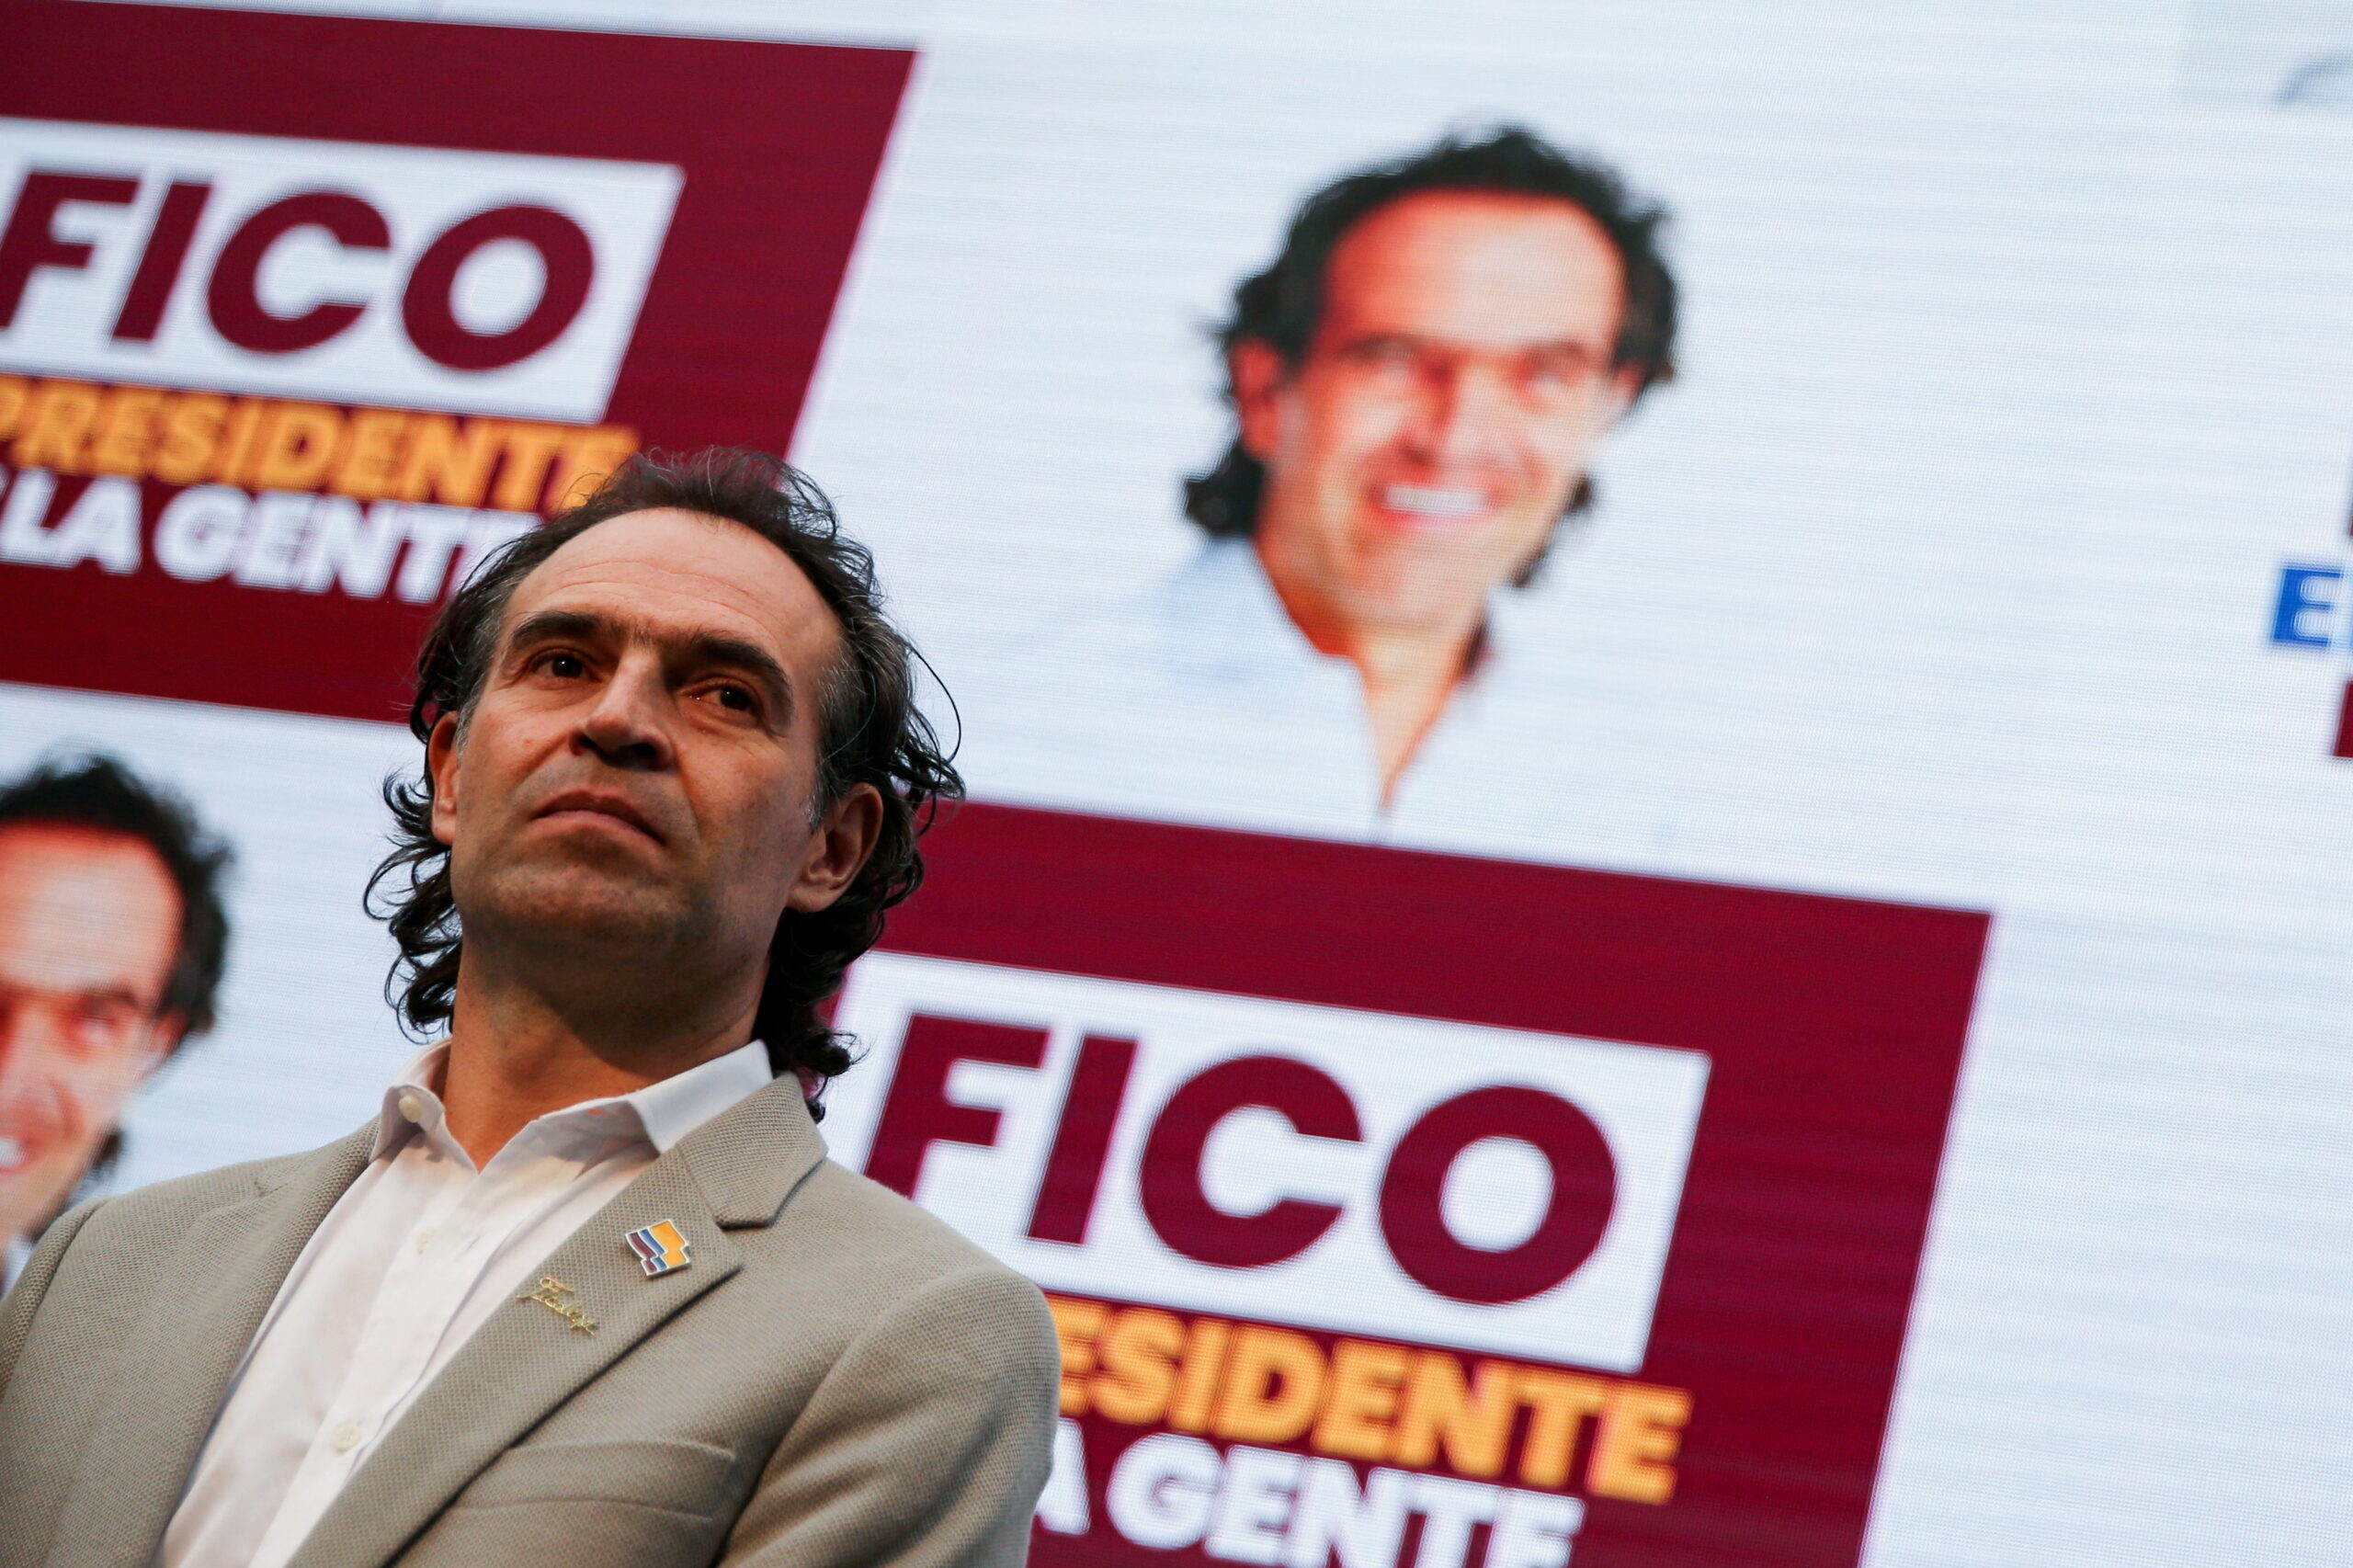 Federico Gutiérrez no podrá figurar como ‘Fico’ en el tarjetón electoral: CNE 